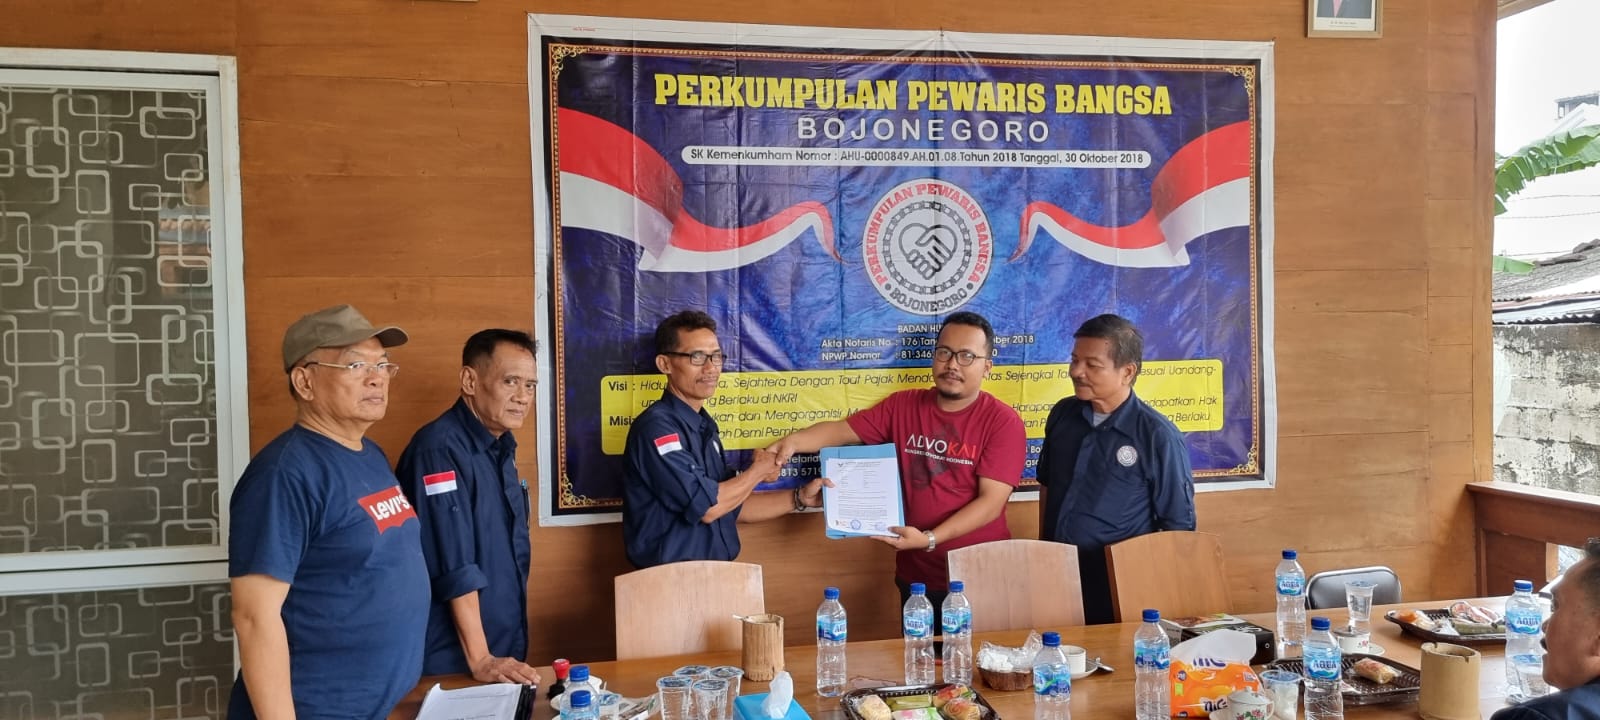 UBK Law Firm Advokat Zaenal Abidin Jalin Kerjasama dengan Perkumpulan Pewaris Bangsa Bojonegoro